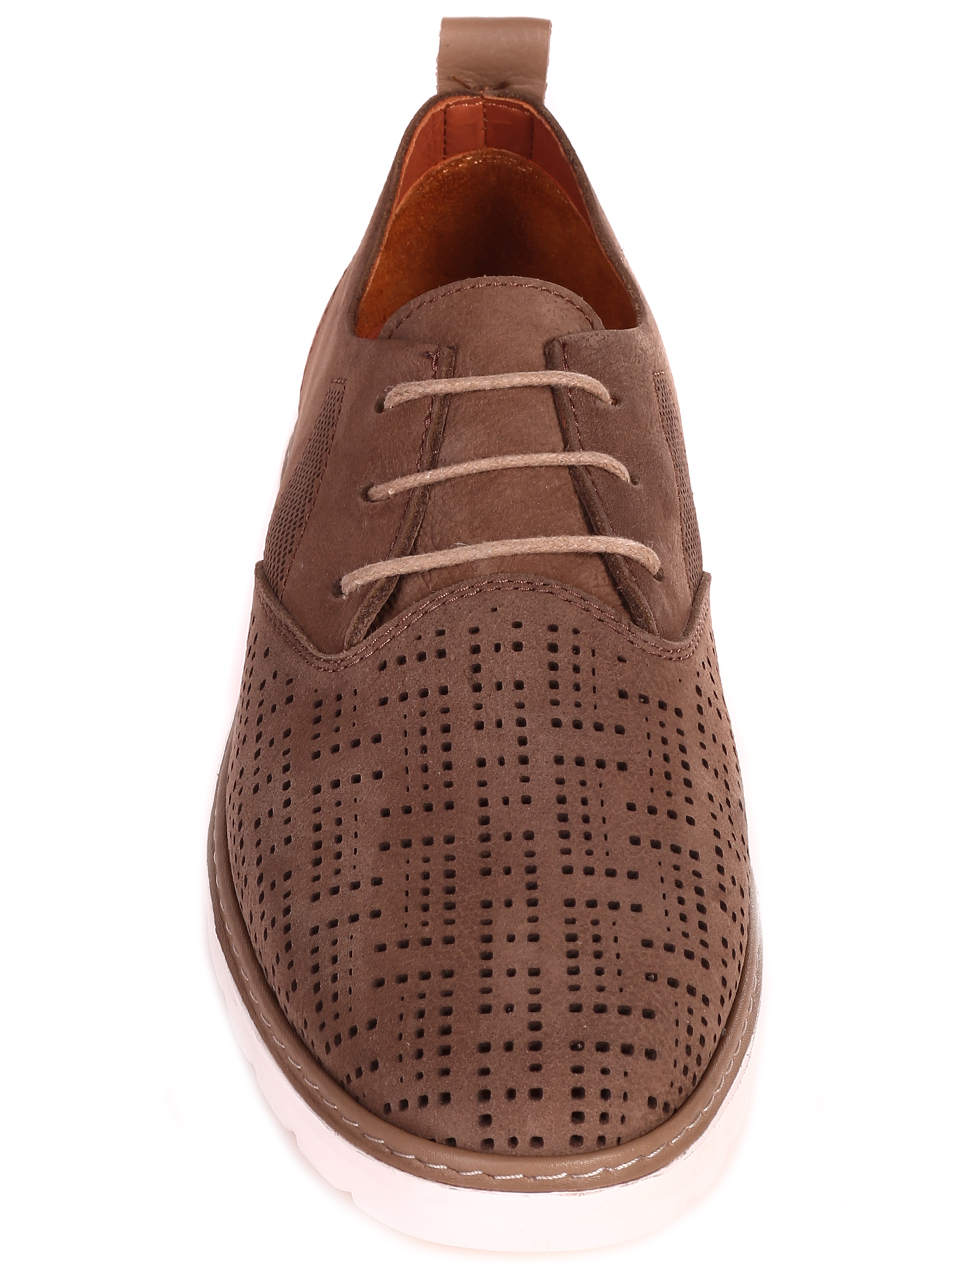 Mъжки обувки от естествен набук в кафяво 7AT-24373 nude